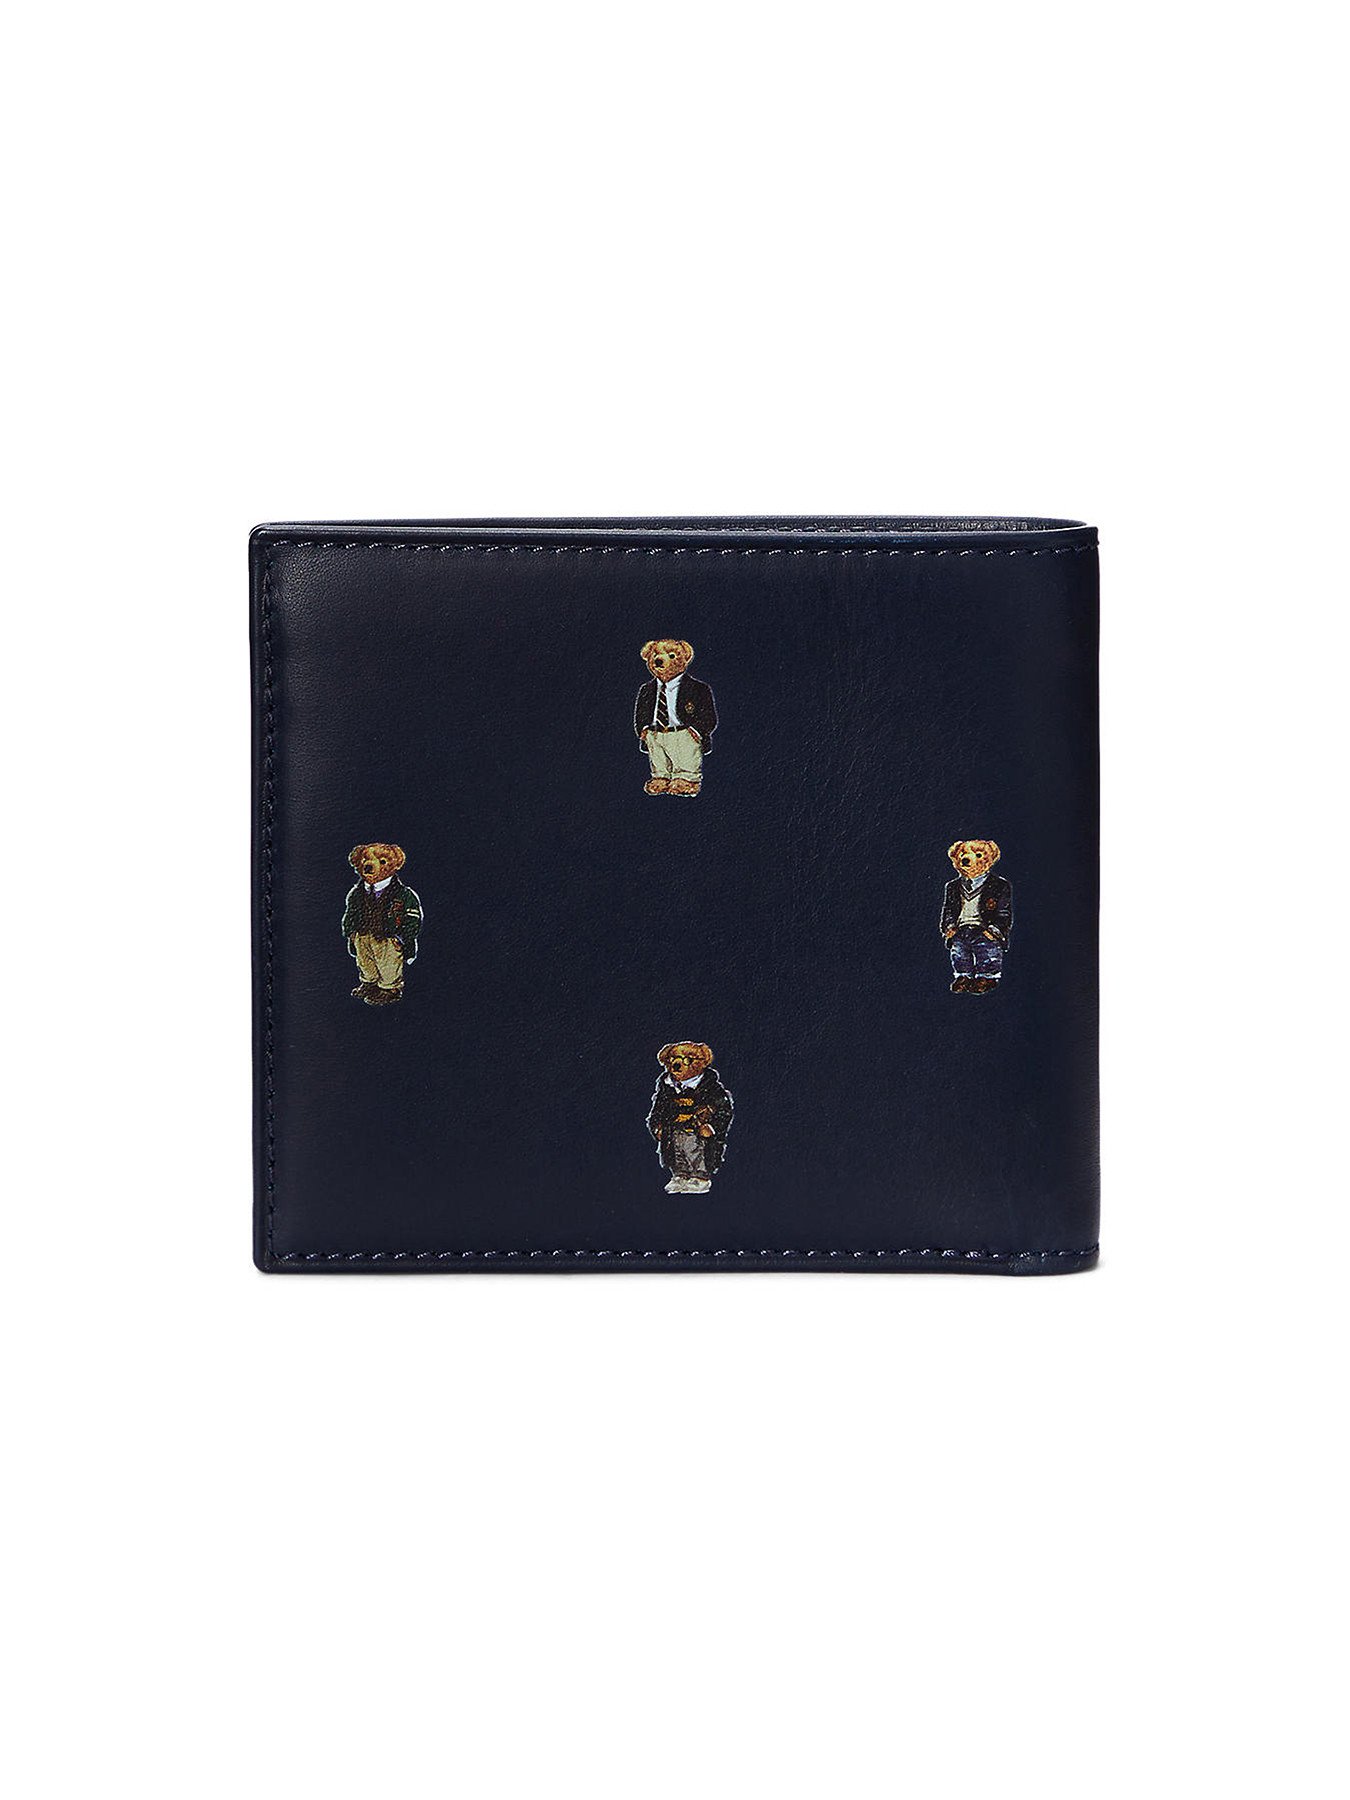 Polo Bear Leather Billfold Wallet